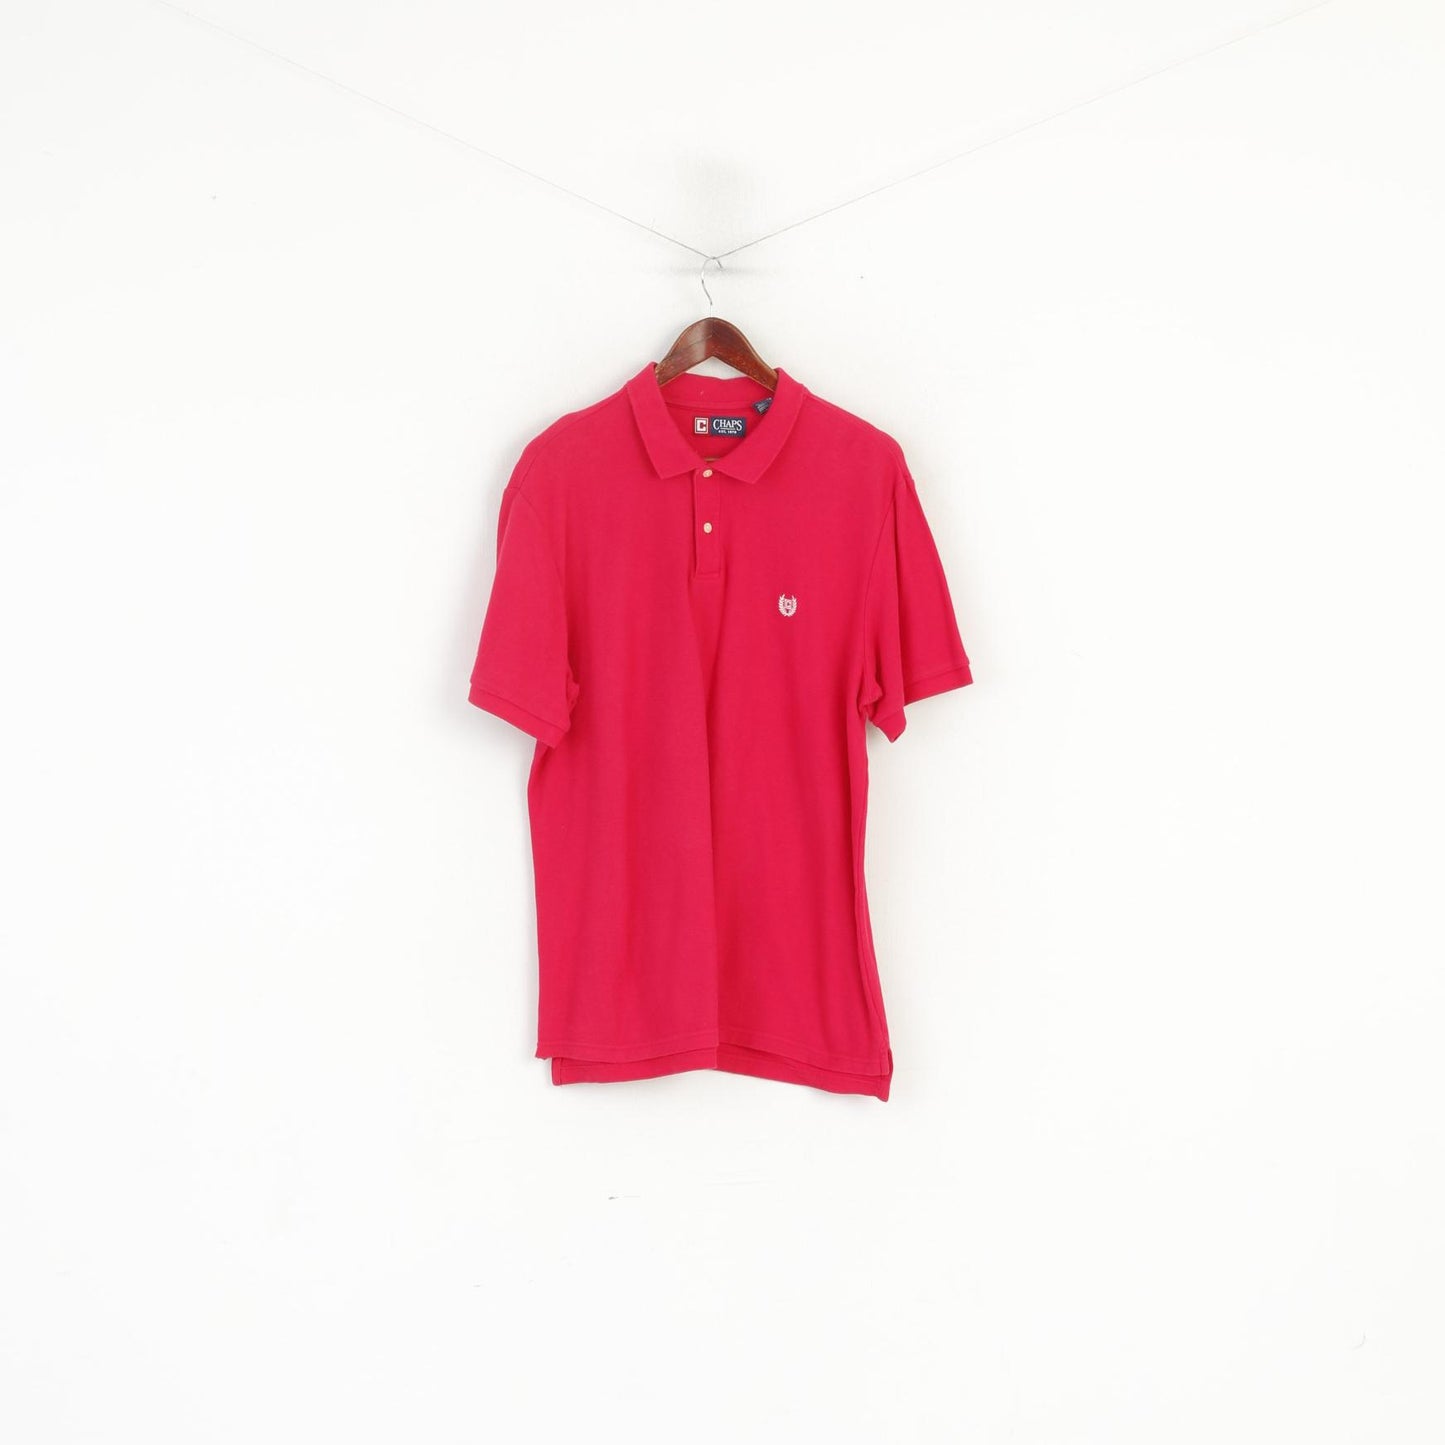 Chaps Men XL Polo Shirt Amaranth Cotton Plain Vintage Classic Short Sleeeve Top